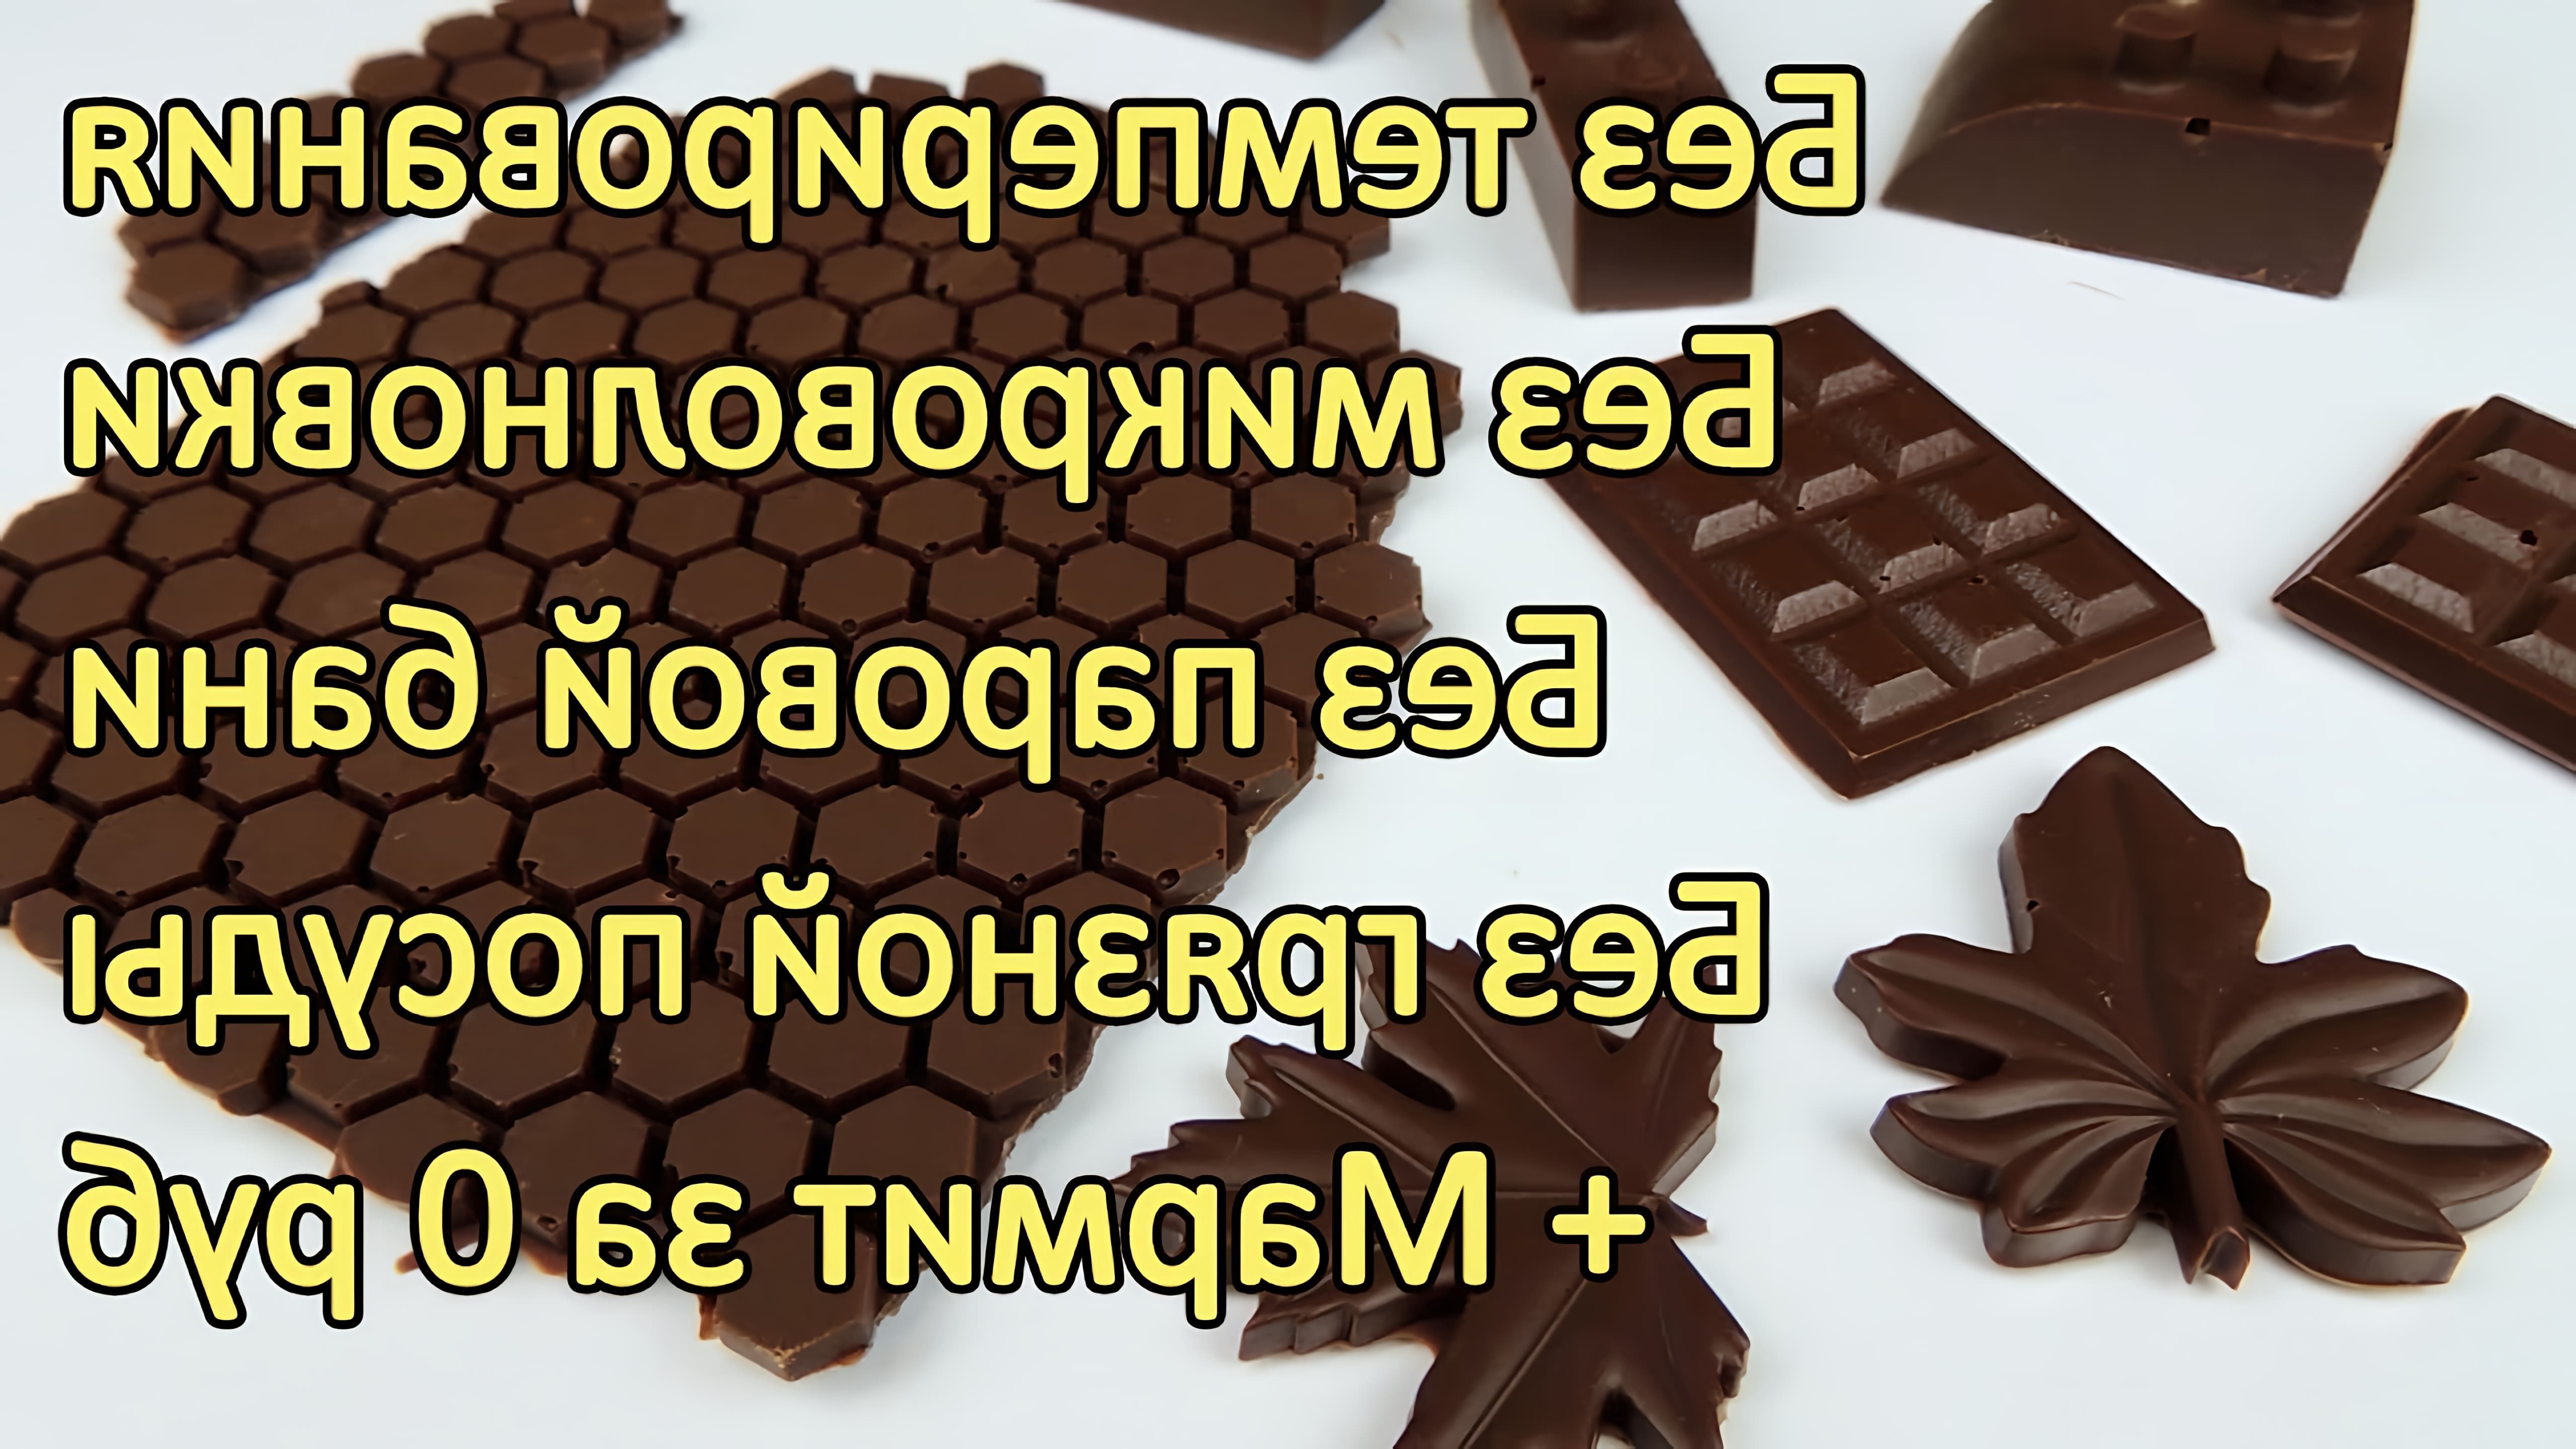 В этом видео демонстрируется метод темперирования шоколада без использования мраморной доски, какао-масла и микроволновой печи